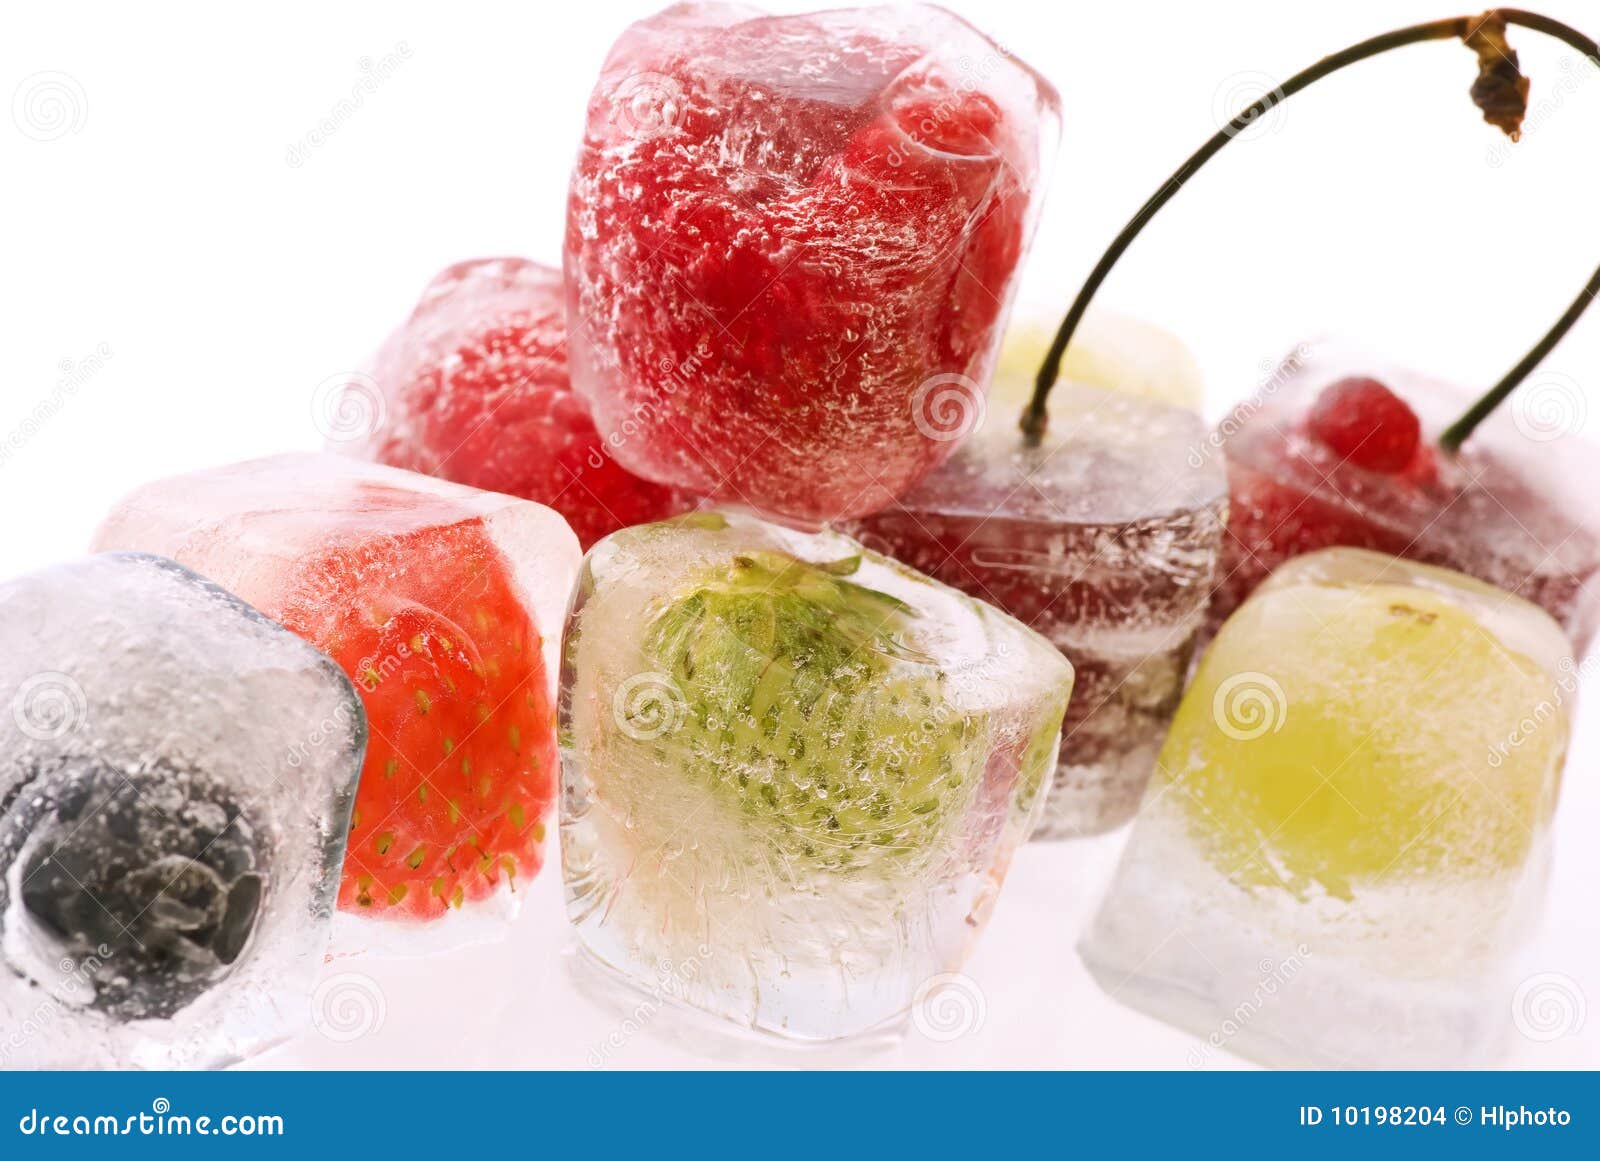 Fruta congelada foto de archivo. Imagen de verde, vitaminas - 10198204